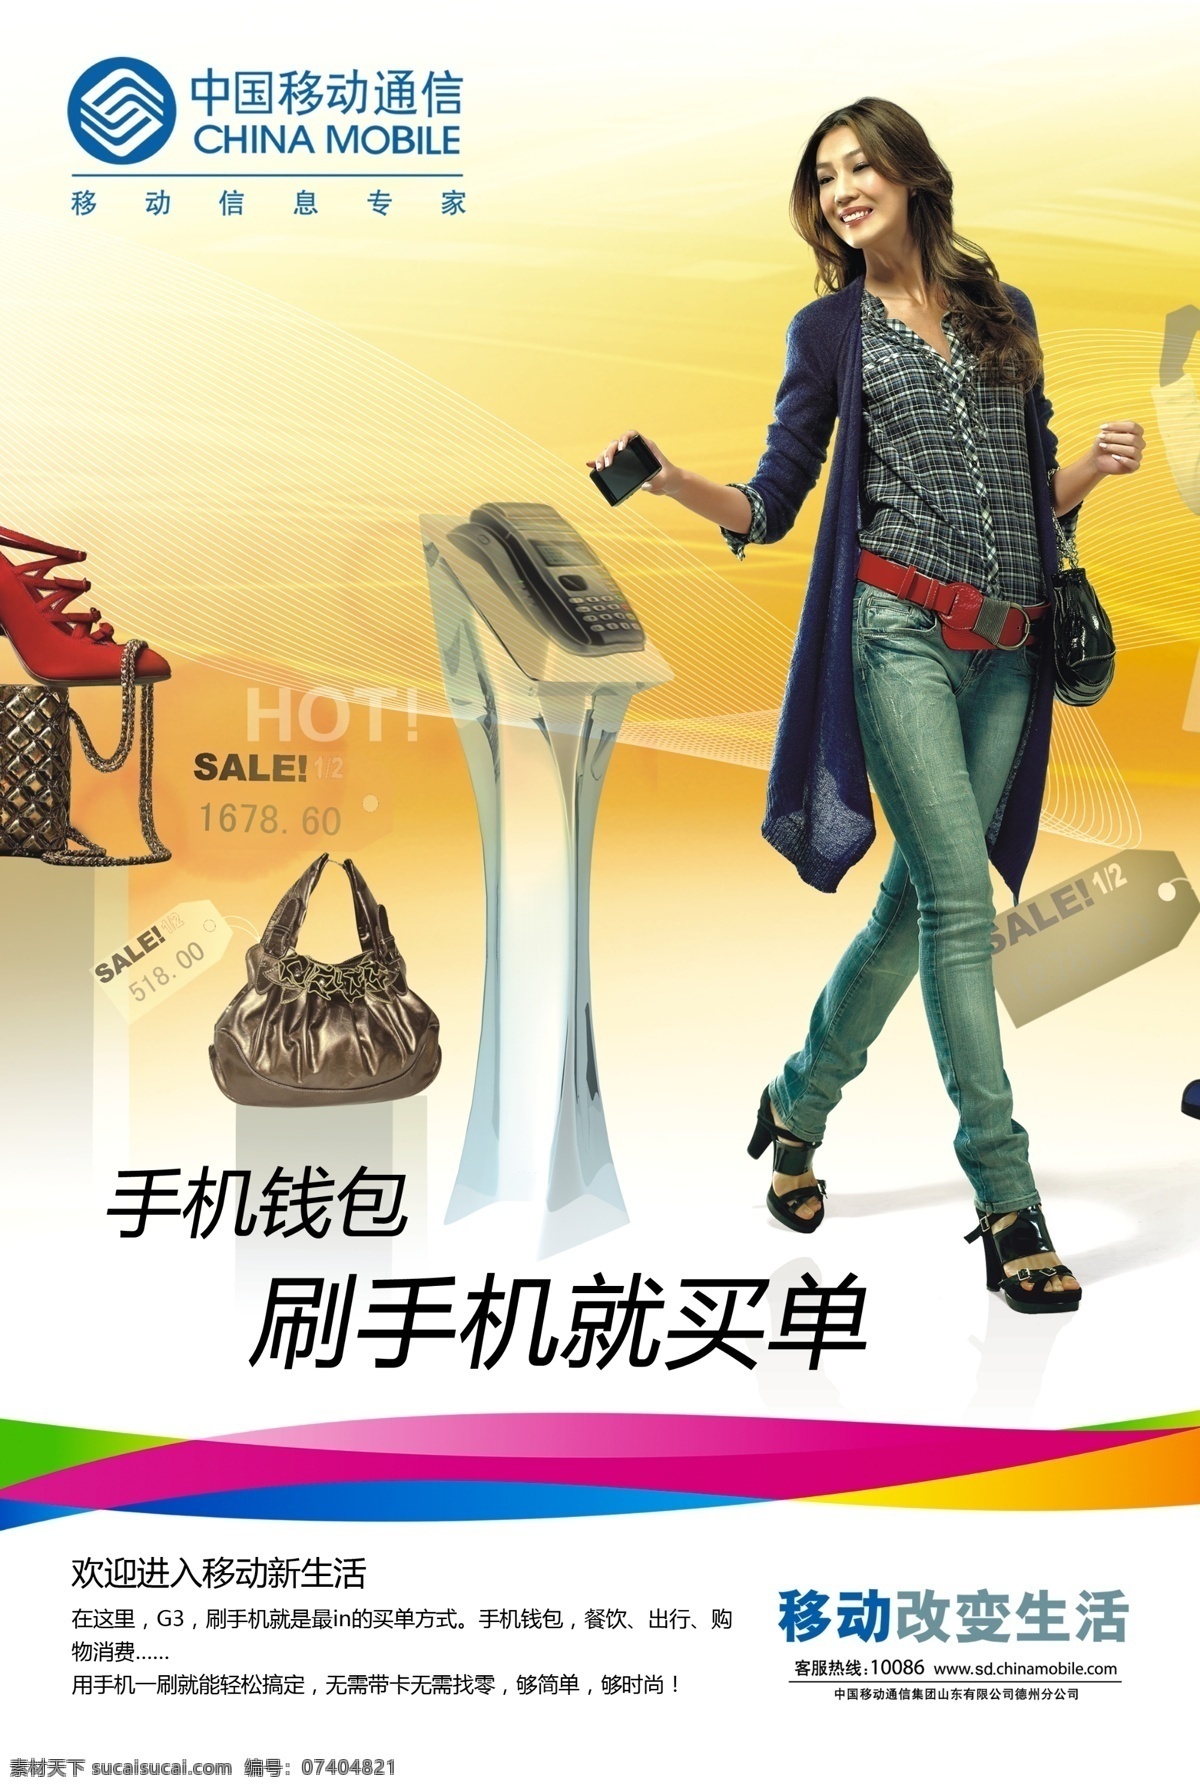 中国移动 海报 展板 3g 包 广告设计模板 美女 鞋 源文件 中国移动海报 报展板 手机钱包 其他海报设计